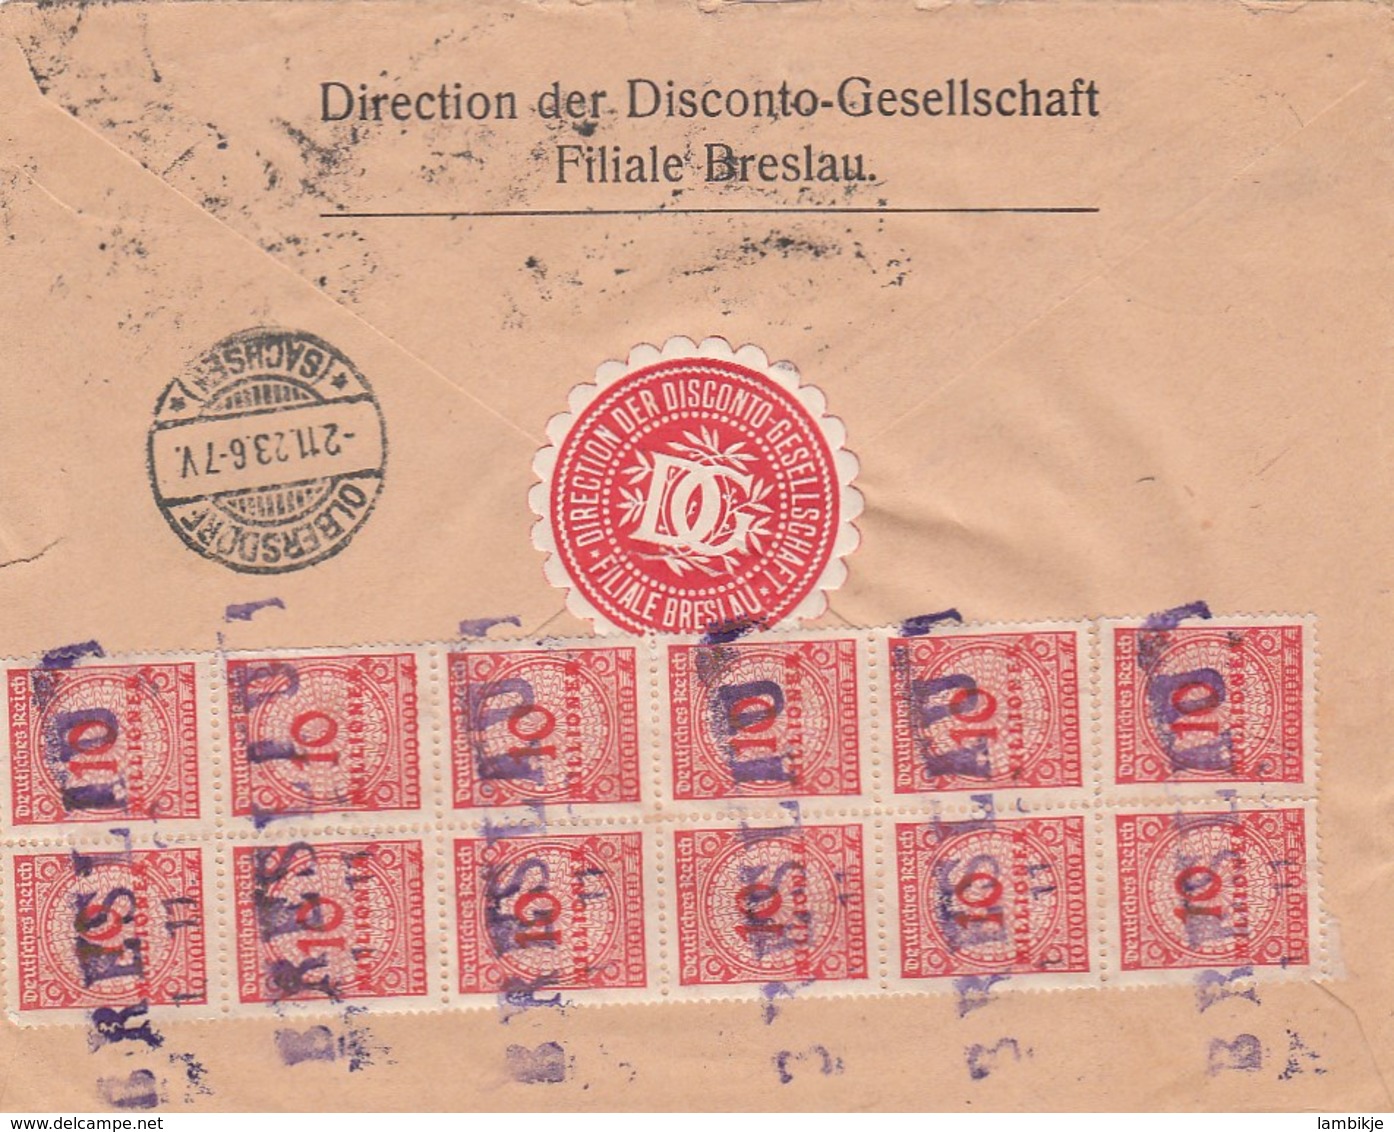 Deutsches Reich INFLA R Brief 1920-23 - Briefe U. Dokumente